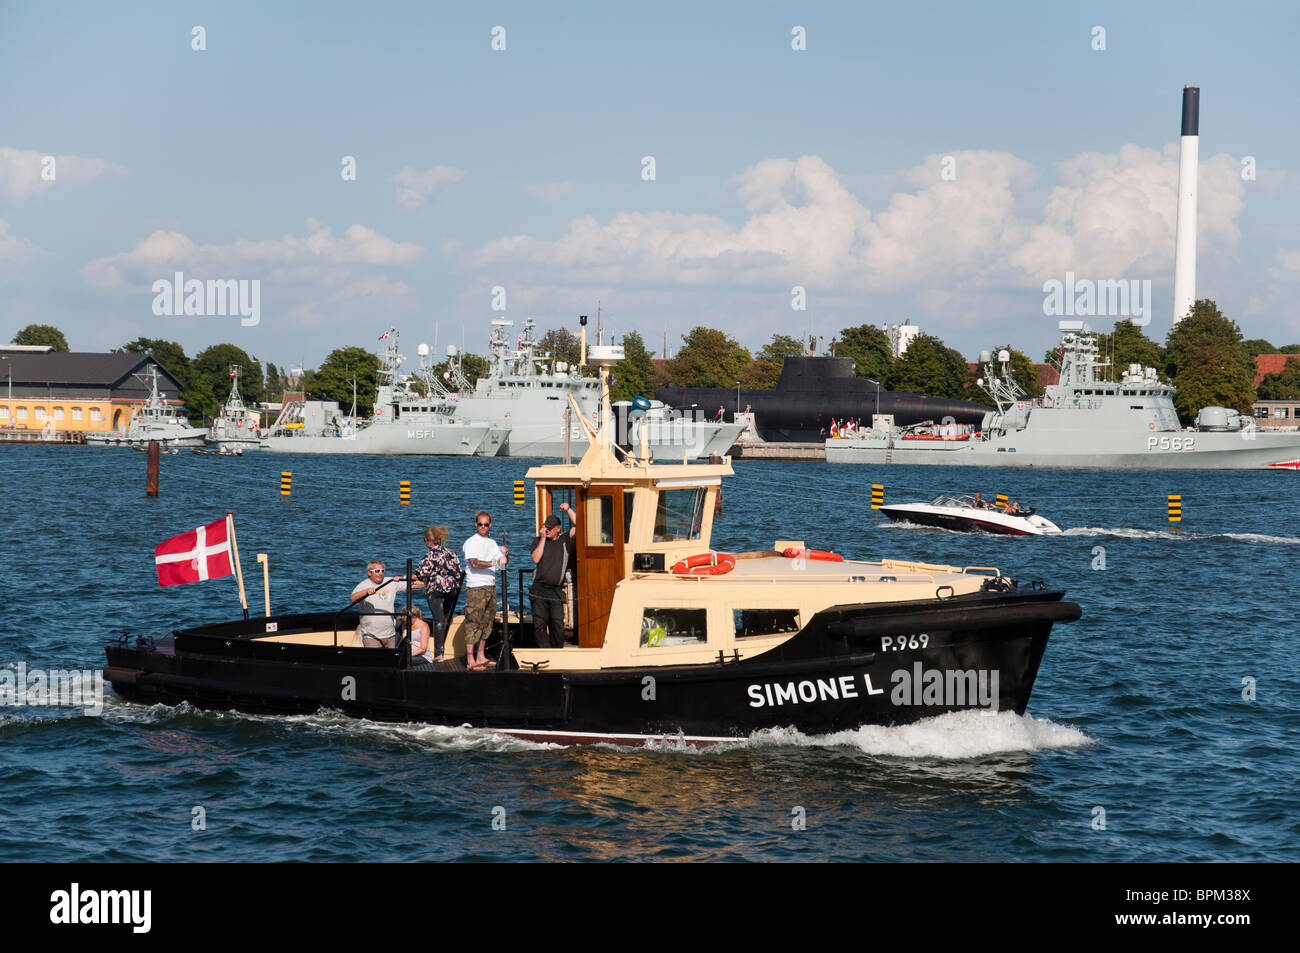 Un viaje en barco a lo largo del estrecho de Oresund durante el 500 aniversario de la Marina Danesa en Copenhague, Dinamarca. Foto de stock